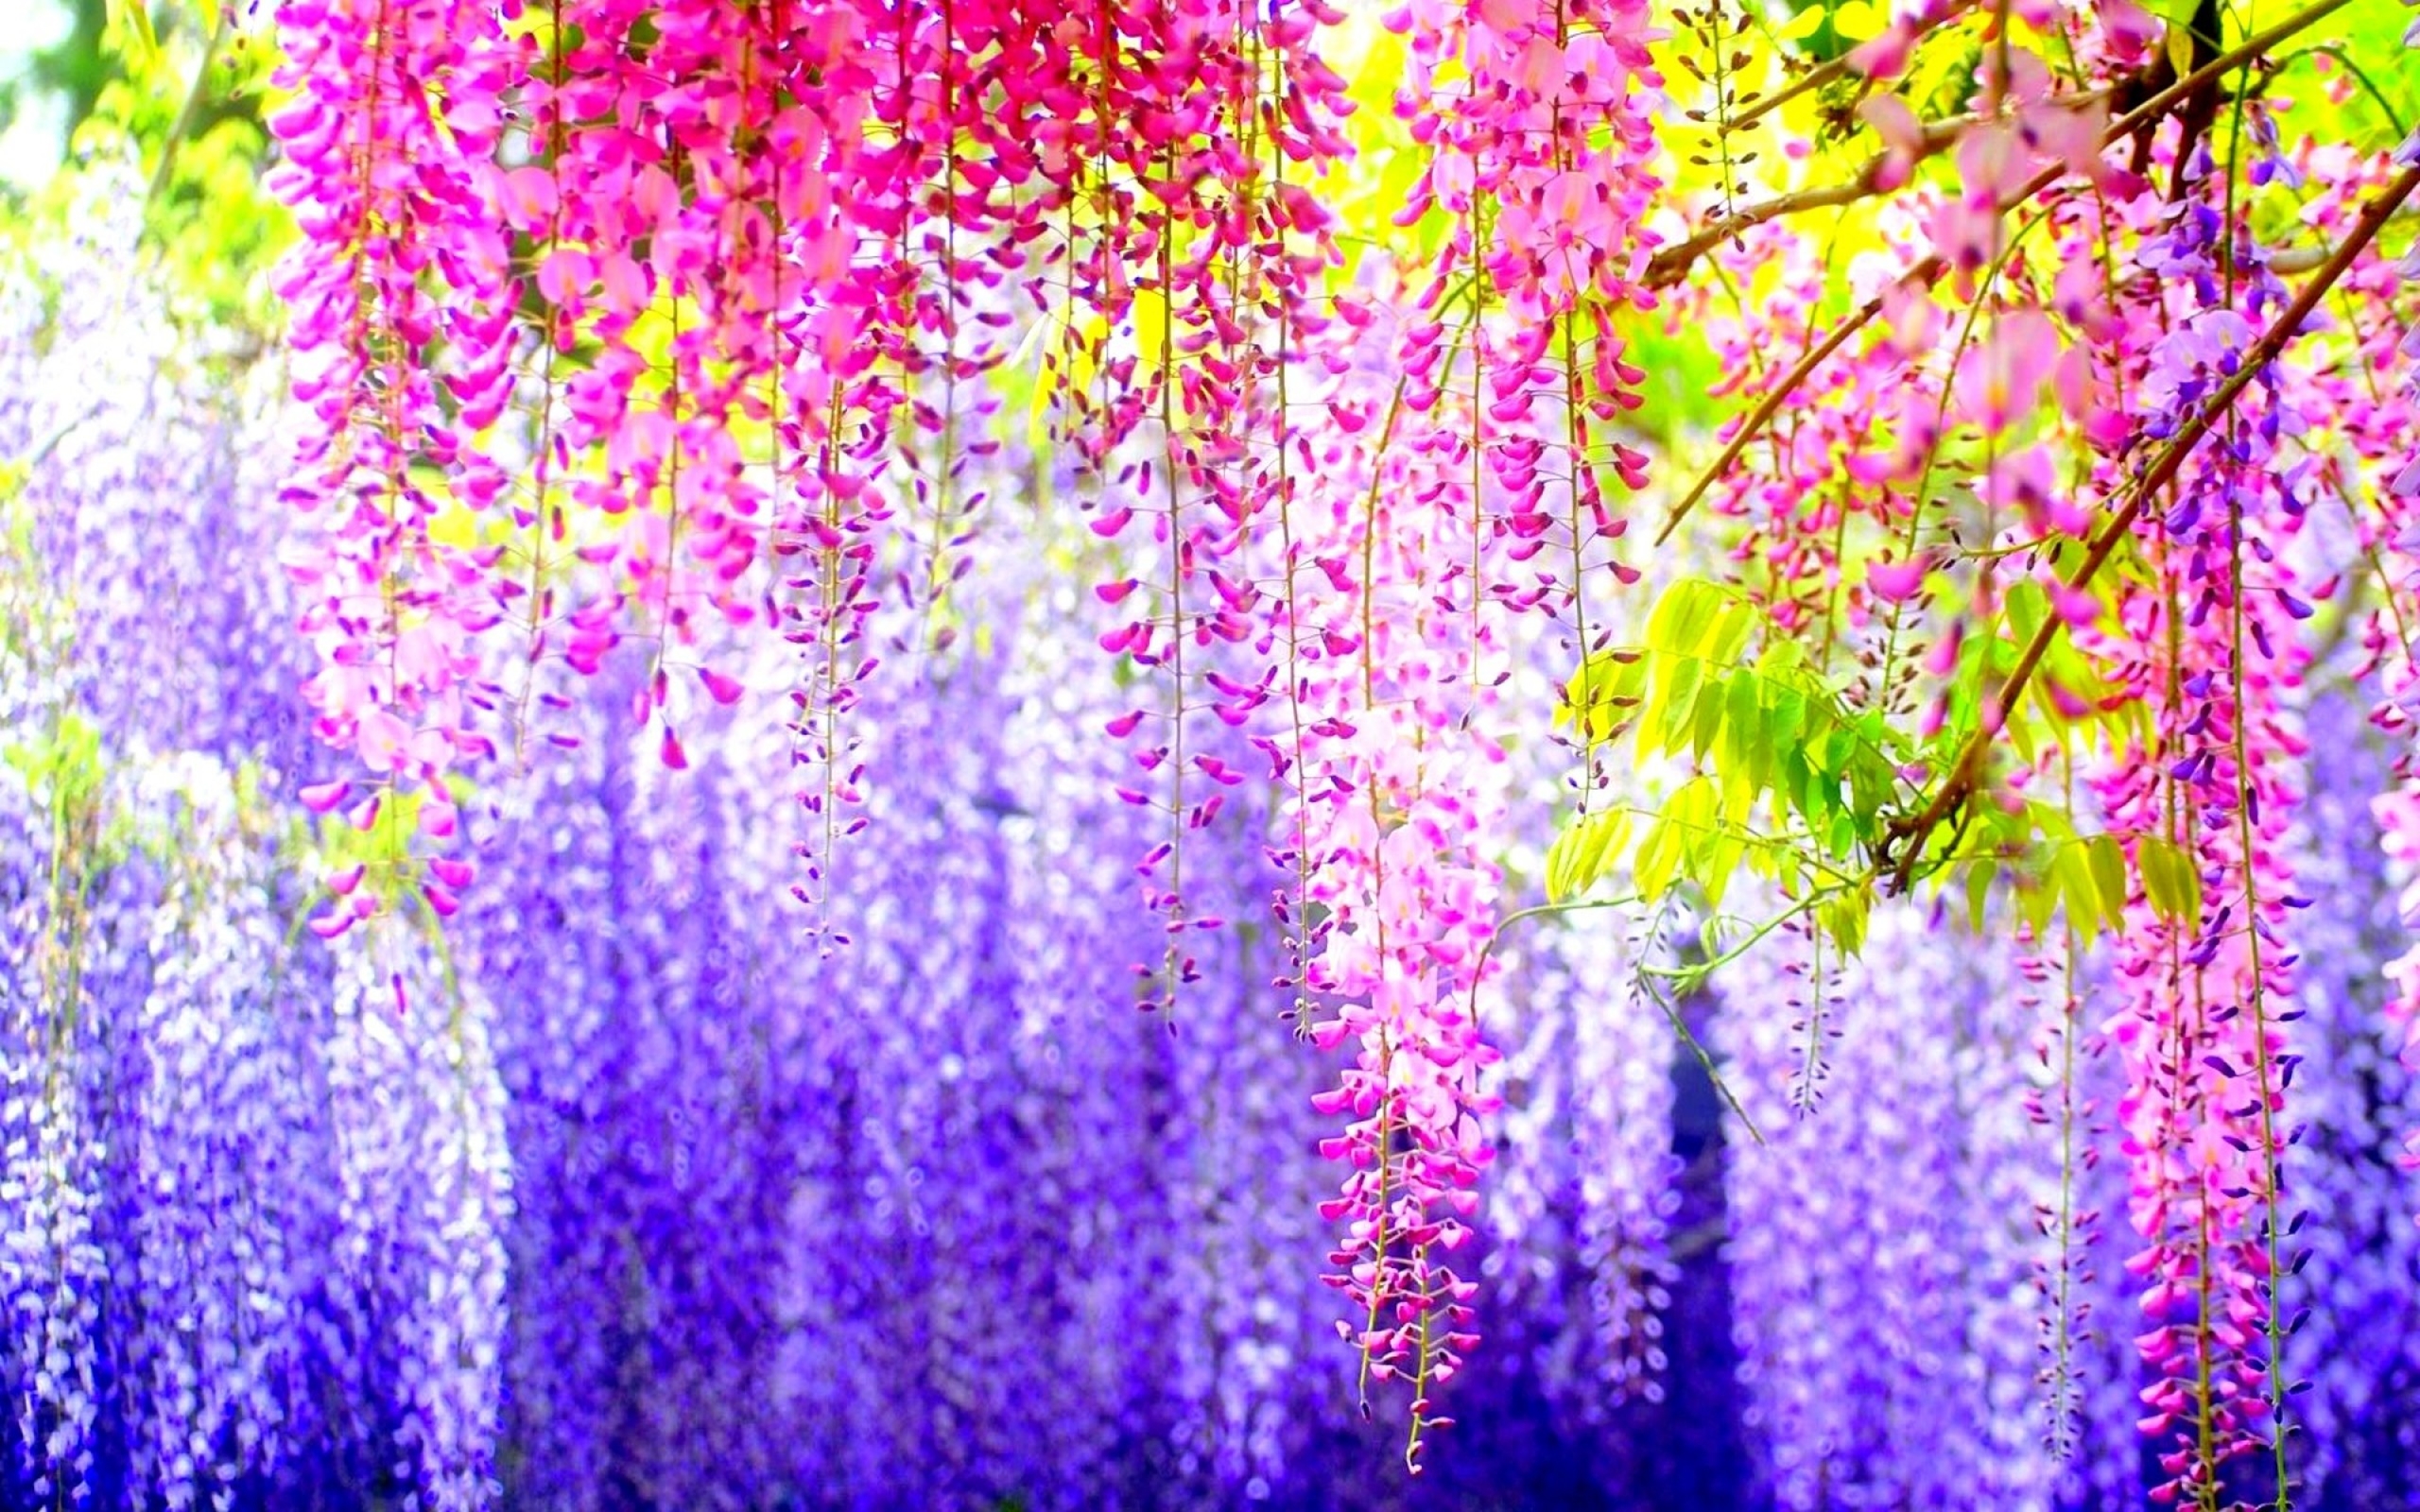 Hãy chiêm ngưỡng vẻ đẹp của hoa Nhật Bản qua hình ảnh tuyệt đẹp này. Được trồng và chăm sóc theo phong cách đặc trưng của đất nước này, những bông hoa Nhật Bản sẽ khiến bạn cảm thấy thật tuyệt vời và đầy cảm hứng.